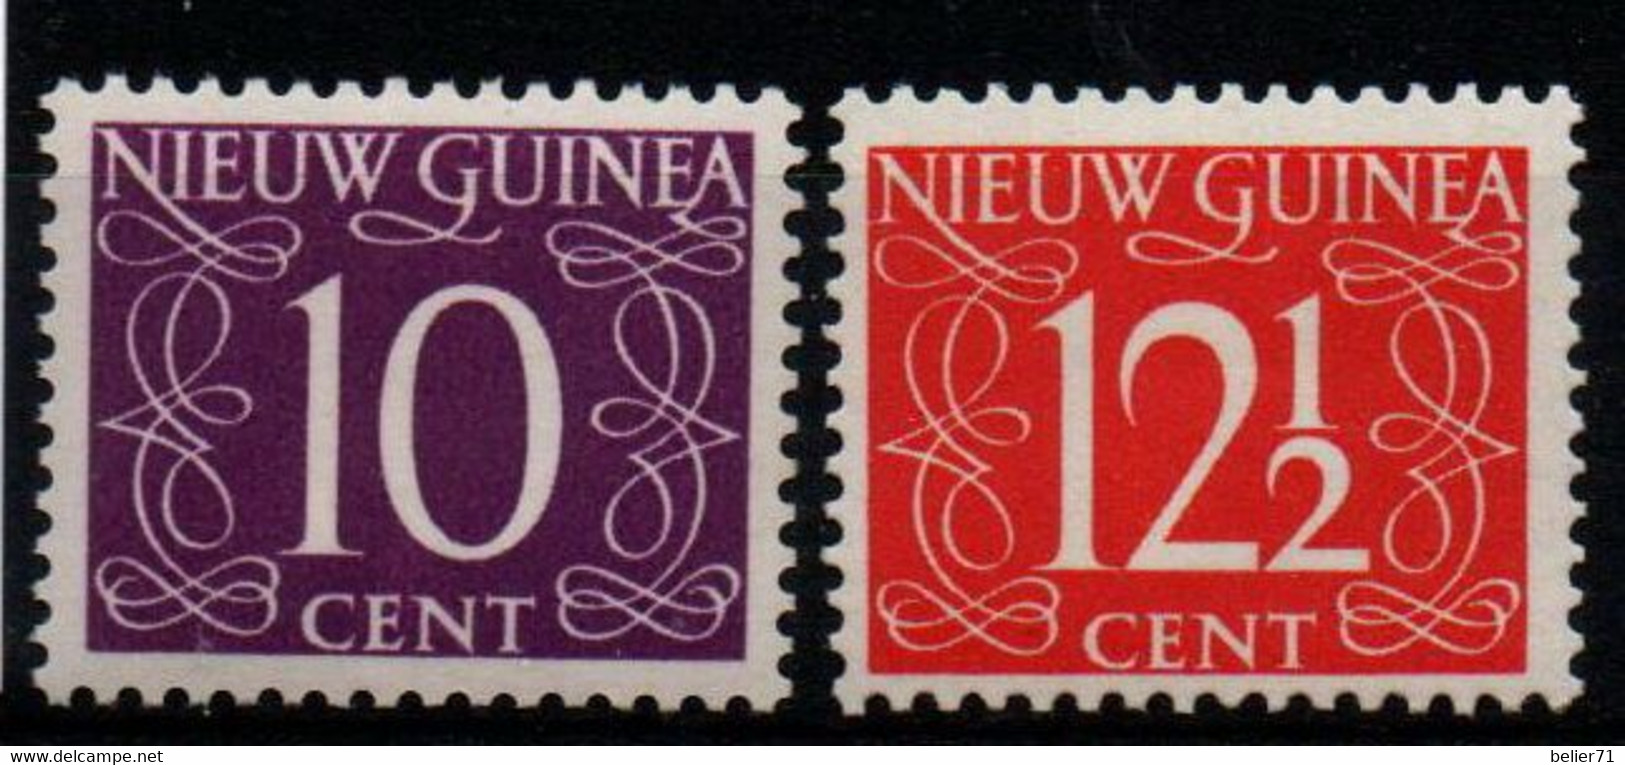 Pays Bas : Nouvelle Guinée N° 8 Et 9 X Neufs Avec Traces De Charnière Année 1950 - Nederlands Nieuw-Guinea